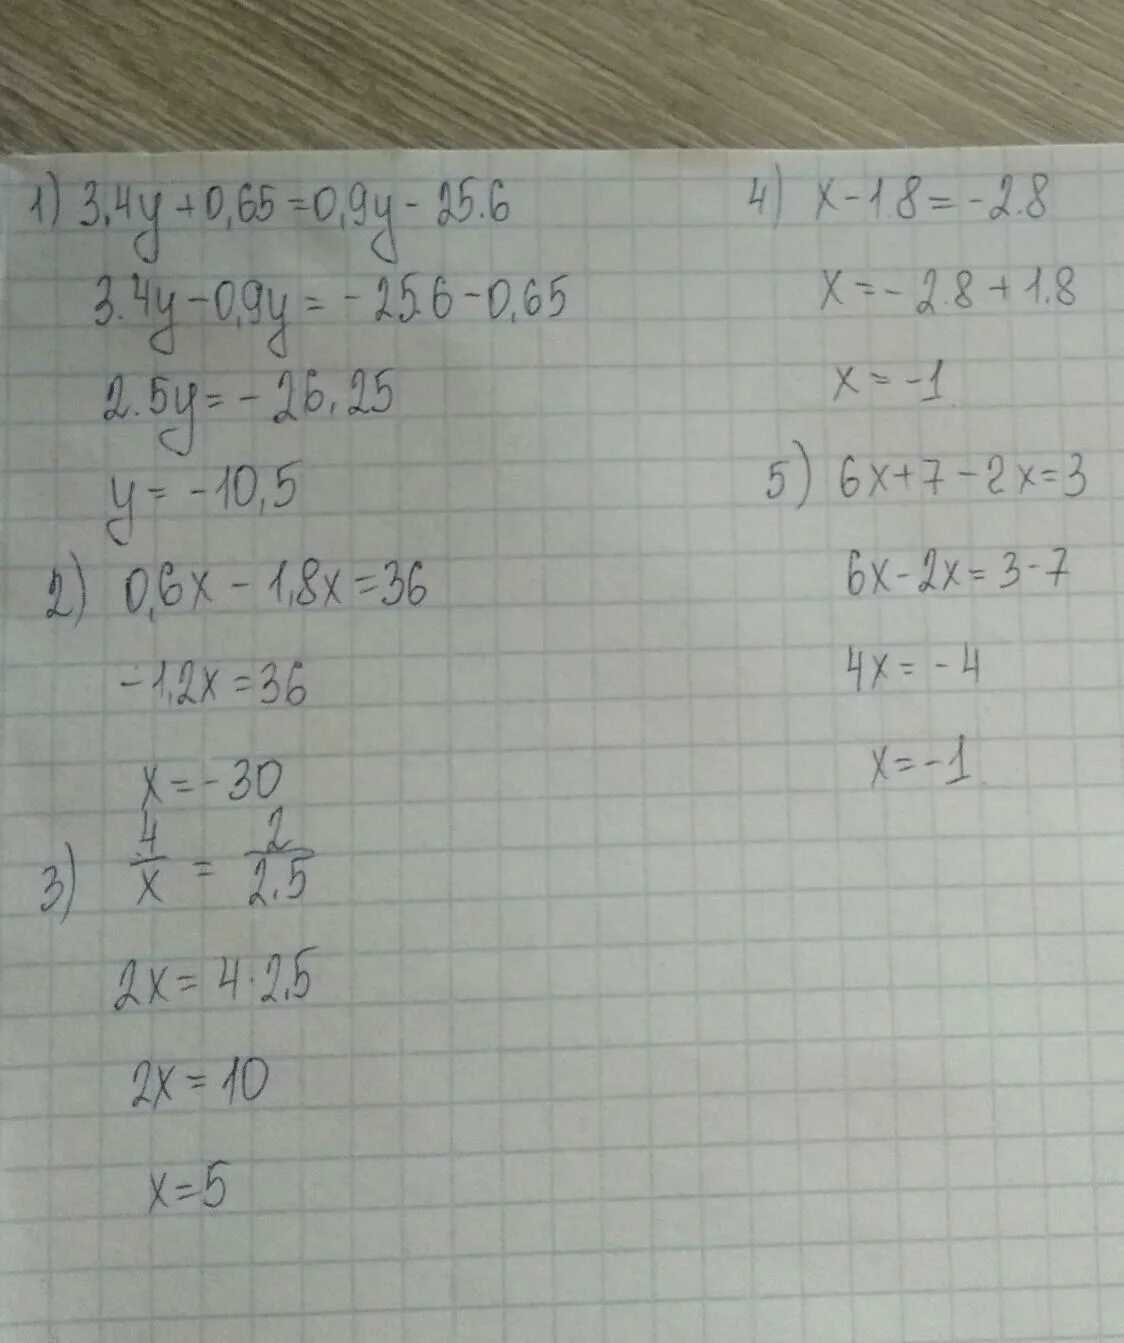 52:Х=193-180. 52 Икс 193-180. Х*9=810:3. Уравнение 52/х=193-180.